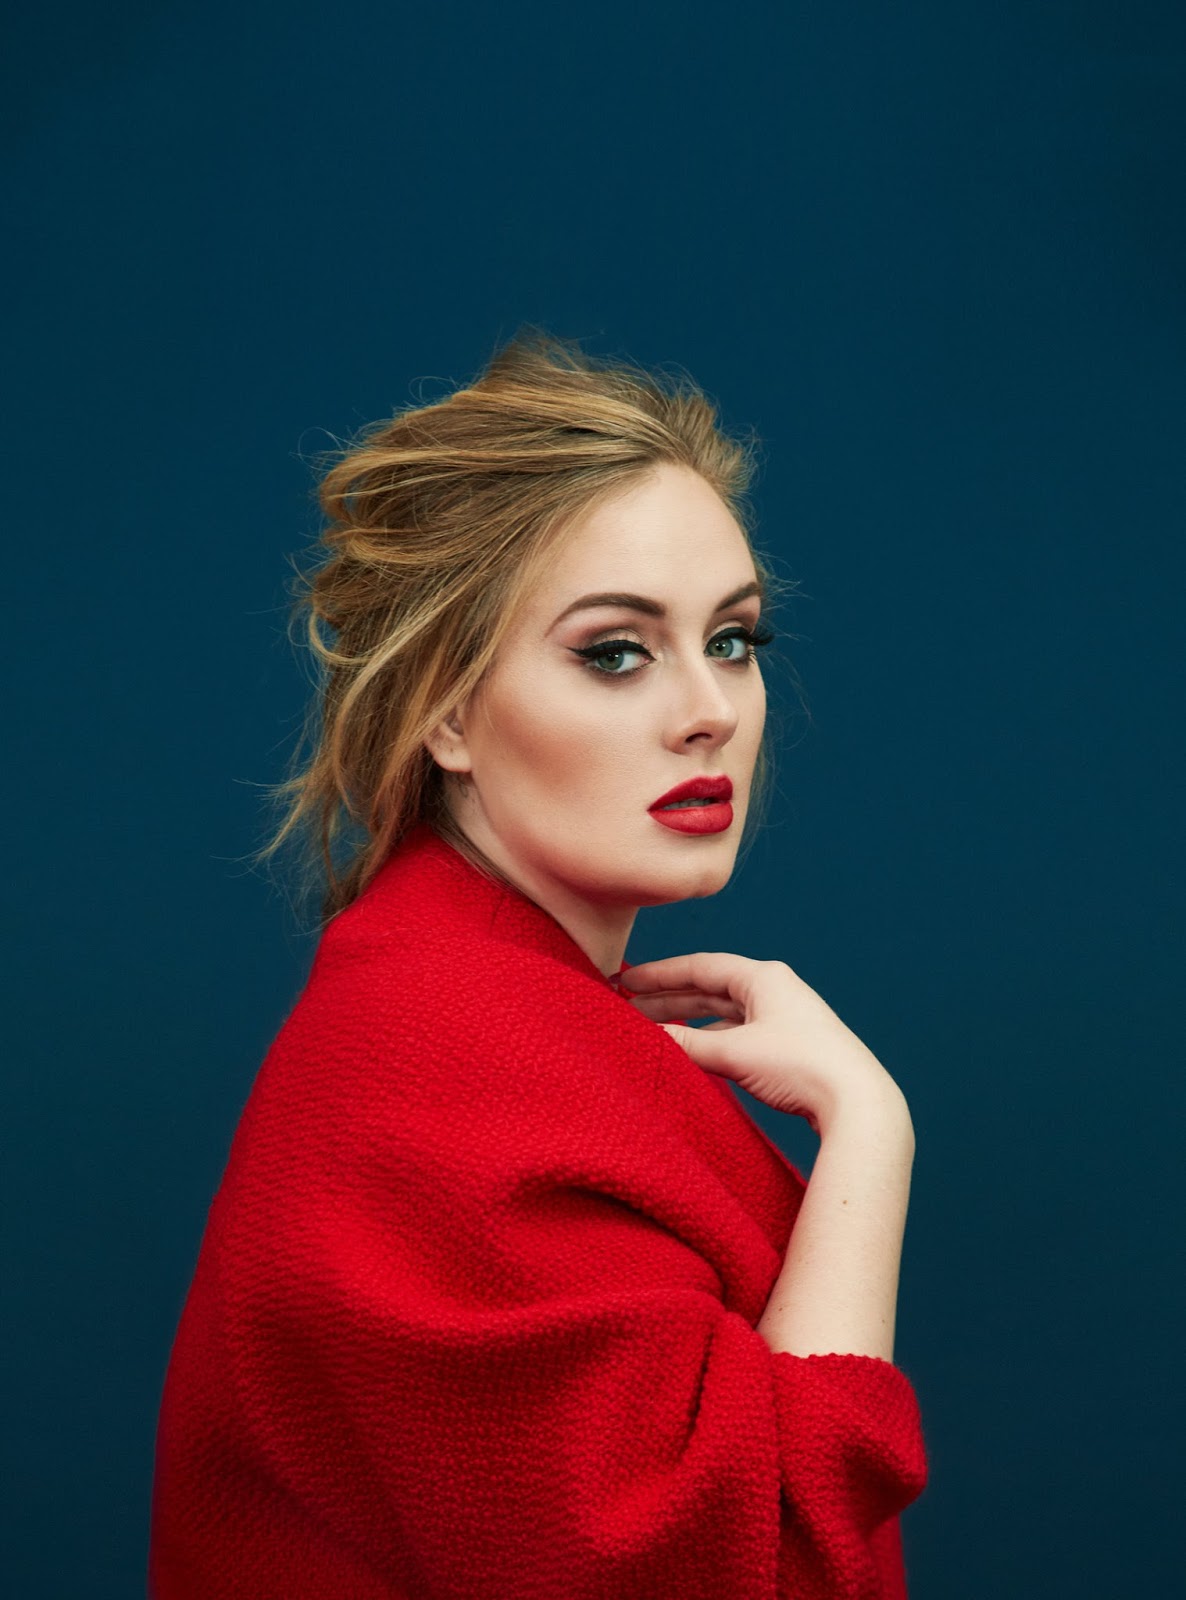 Smile: Adele in Time Magazine December 28th, 2015 by Erik Madigan Heck